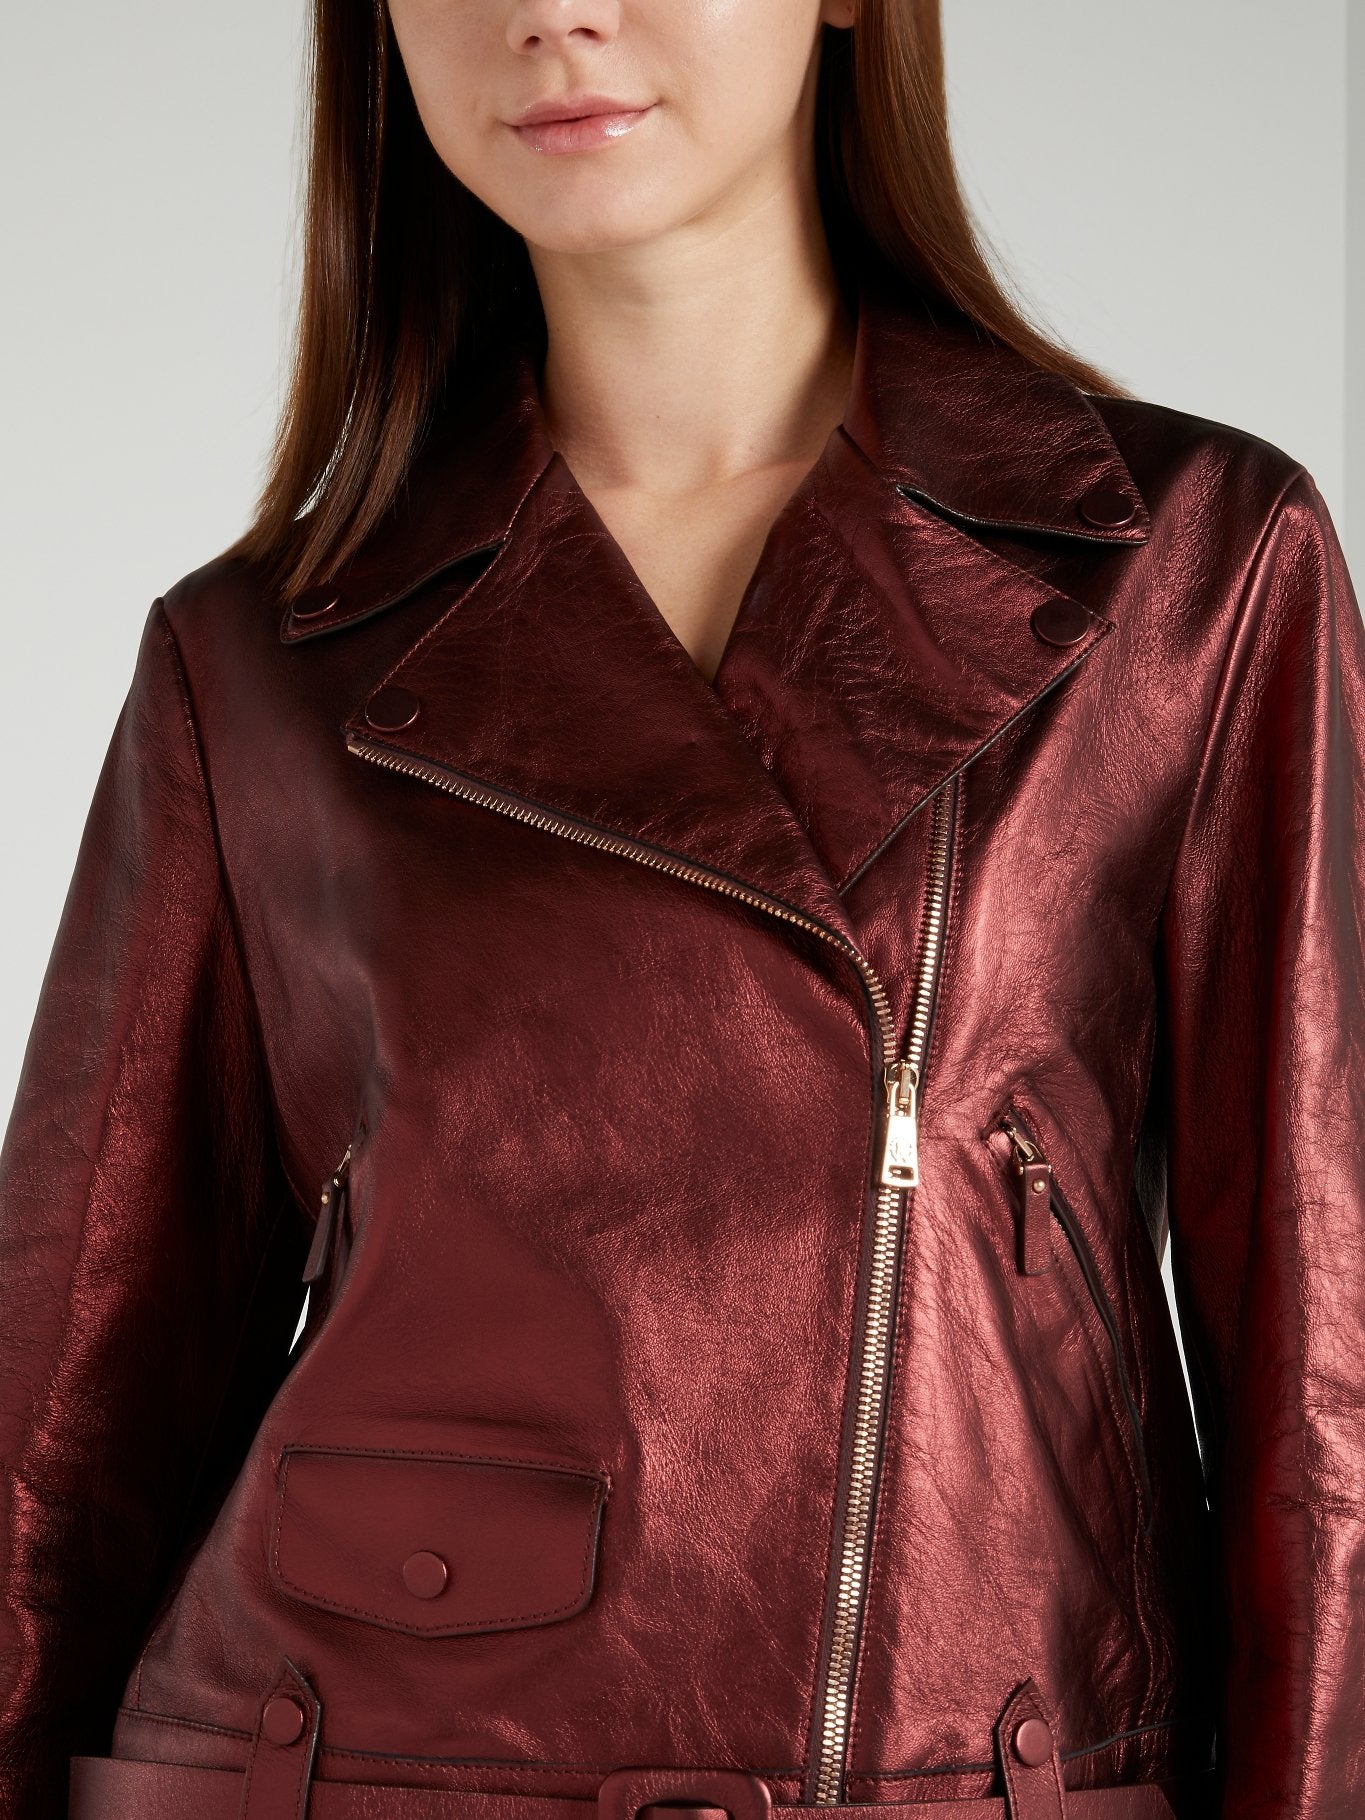 Metallic Burgundy Leather Jacket